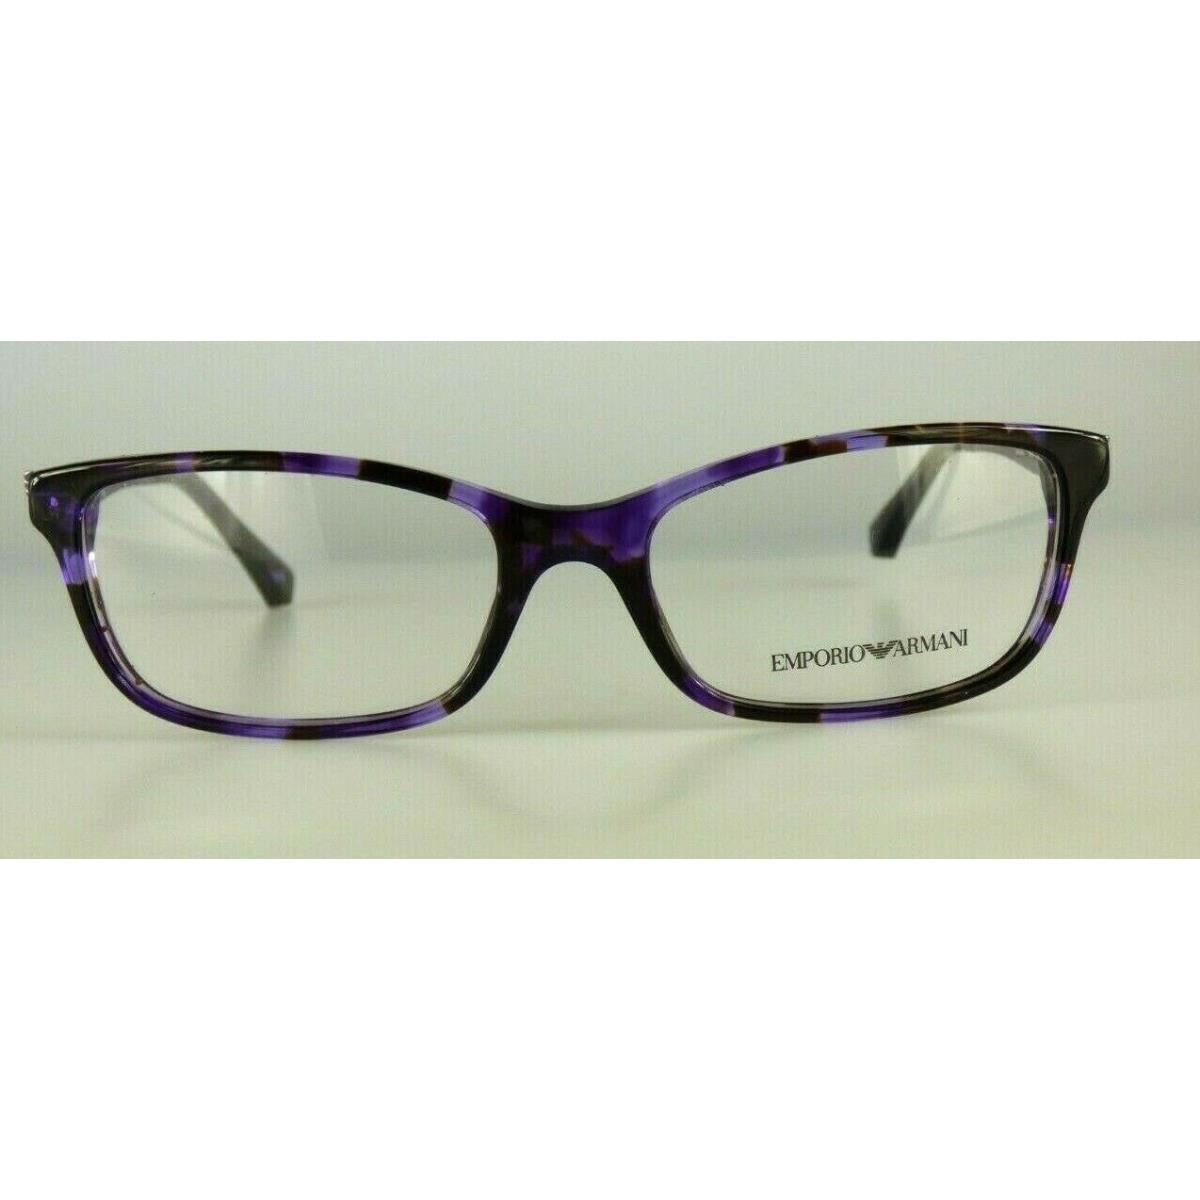 Emporio Armani Eyeglasses Model EA 3031 Color 5226